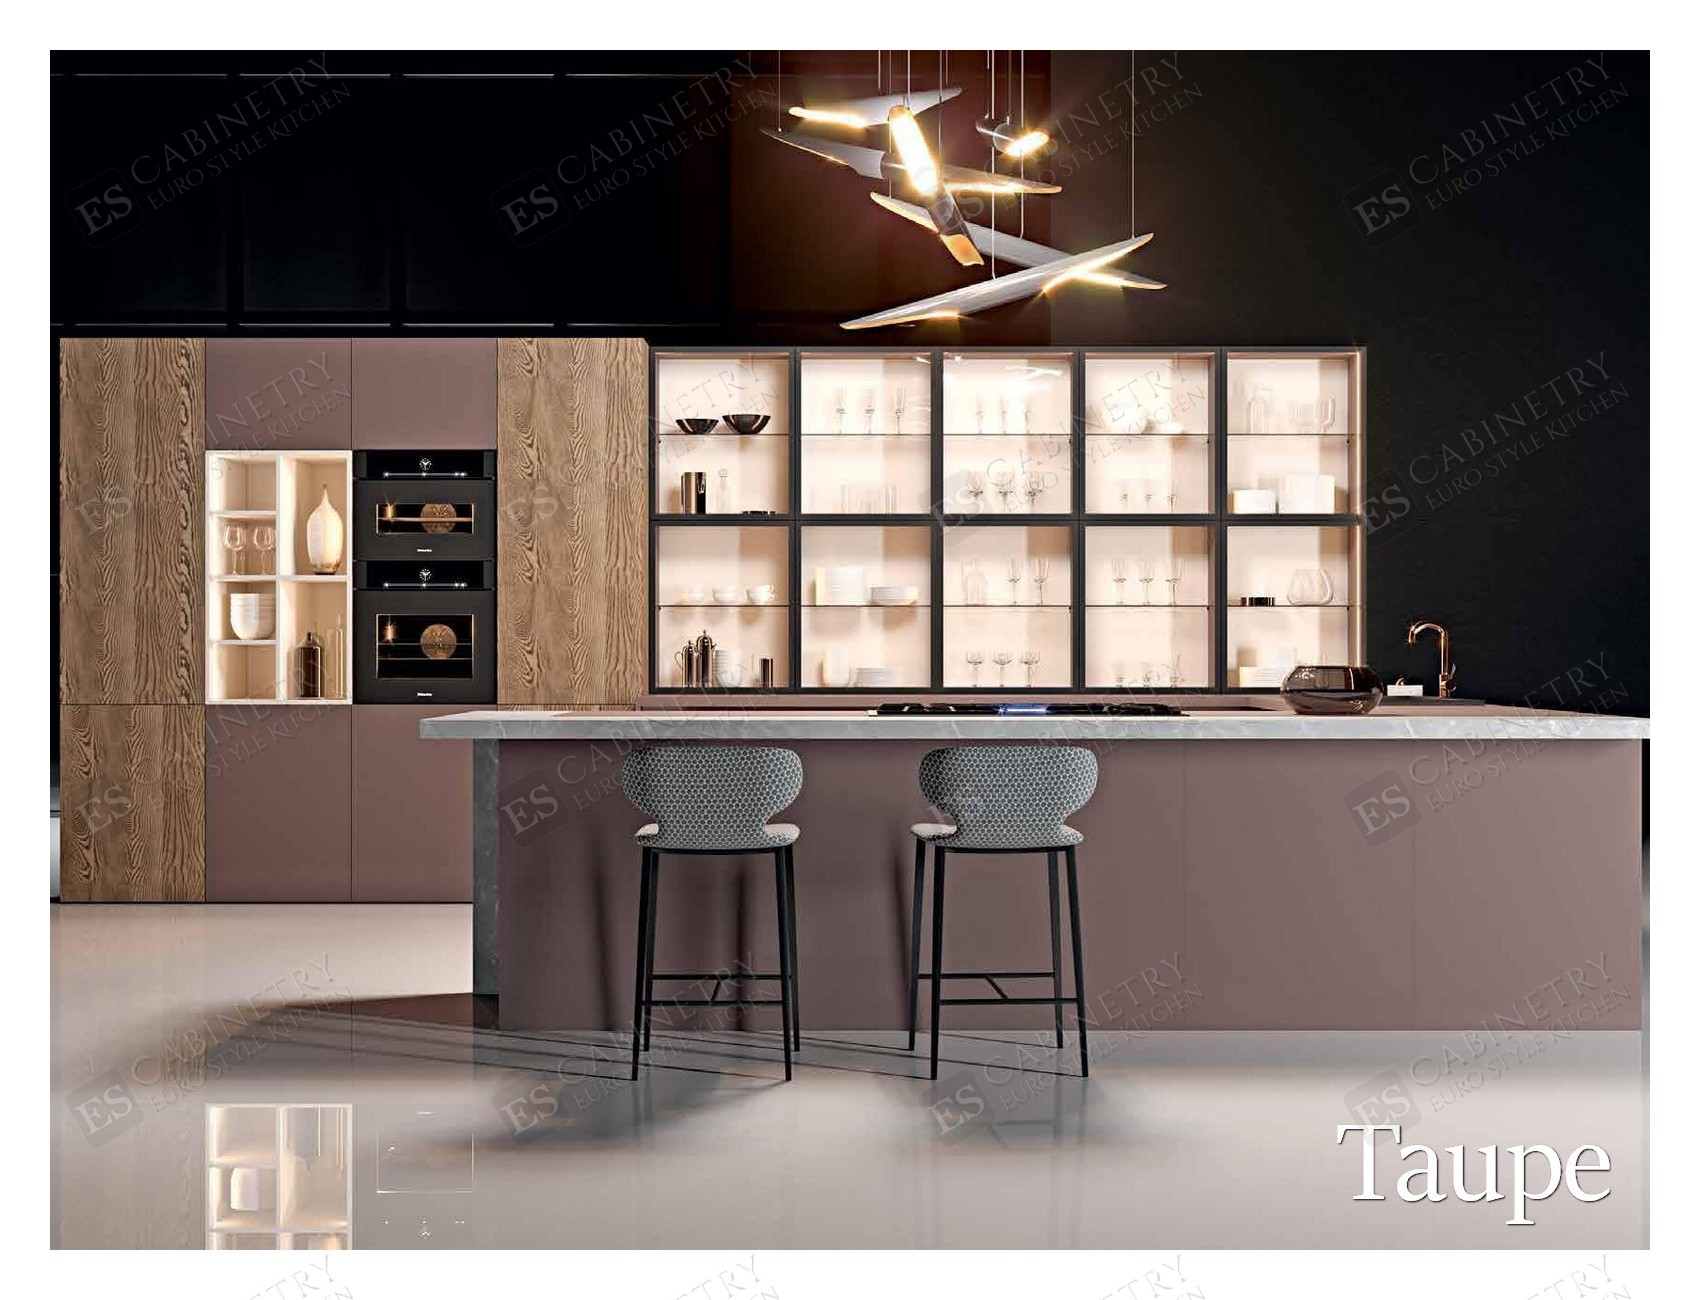 Taupe | European cabinet design